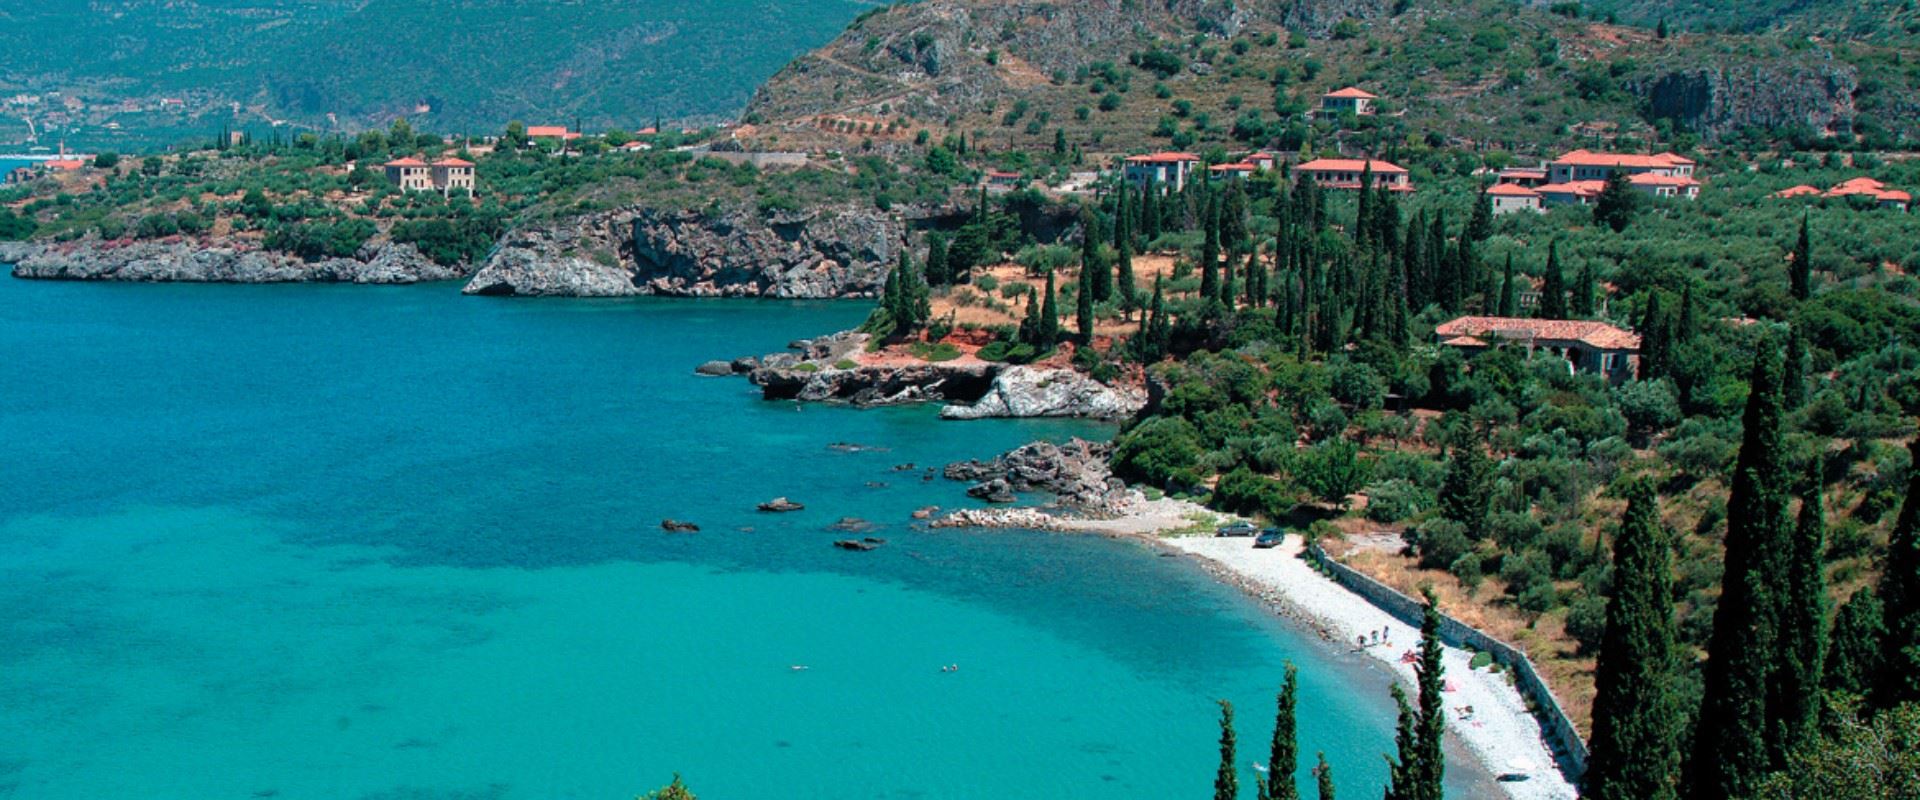 Ονειρεμένα νερά, καλό φαγητό: O ελληνικός προορισμός που αποθεώνουν οι Financial Times (φώτο)